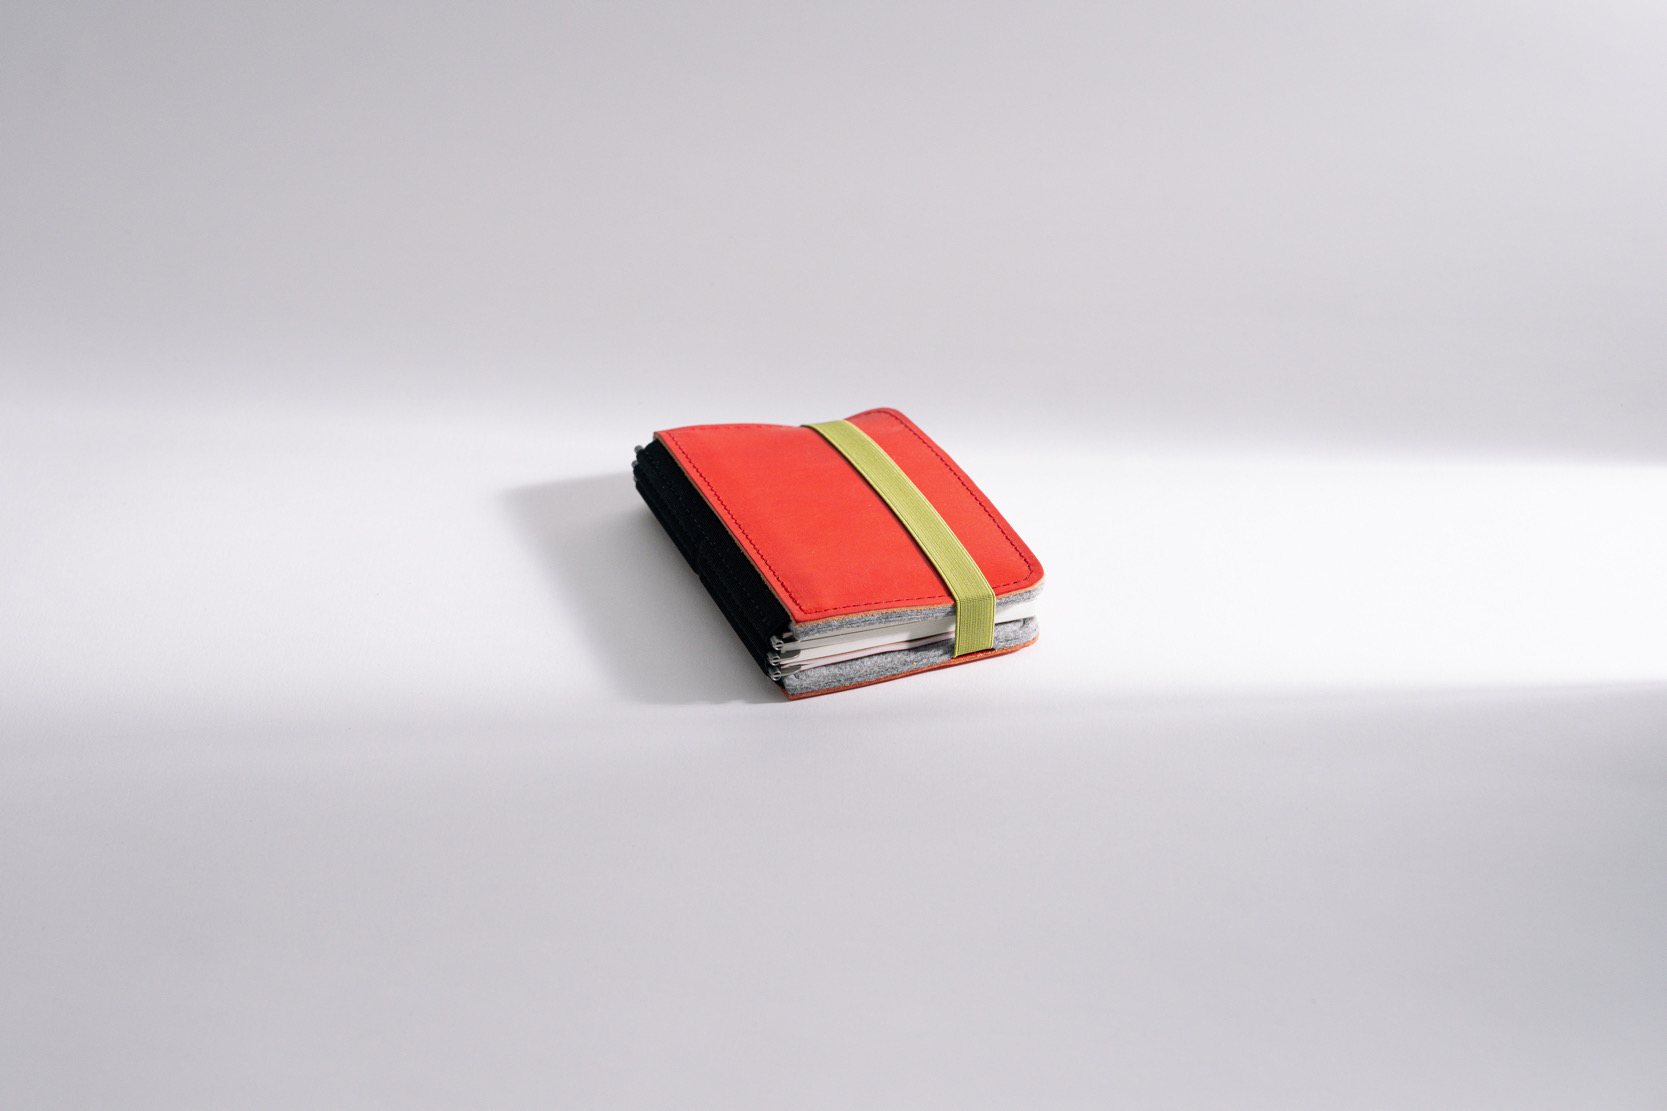 Roterfaden LTD_025 – Klassischer Bestseller mit chromfreiem Leder und Merino Filz für zeitlose Eleganz.